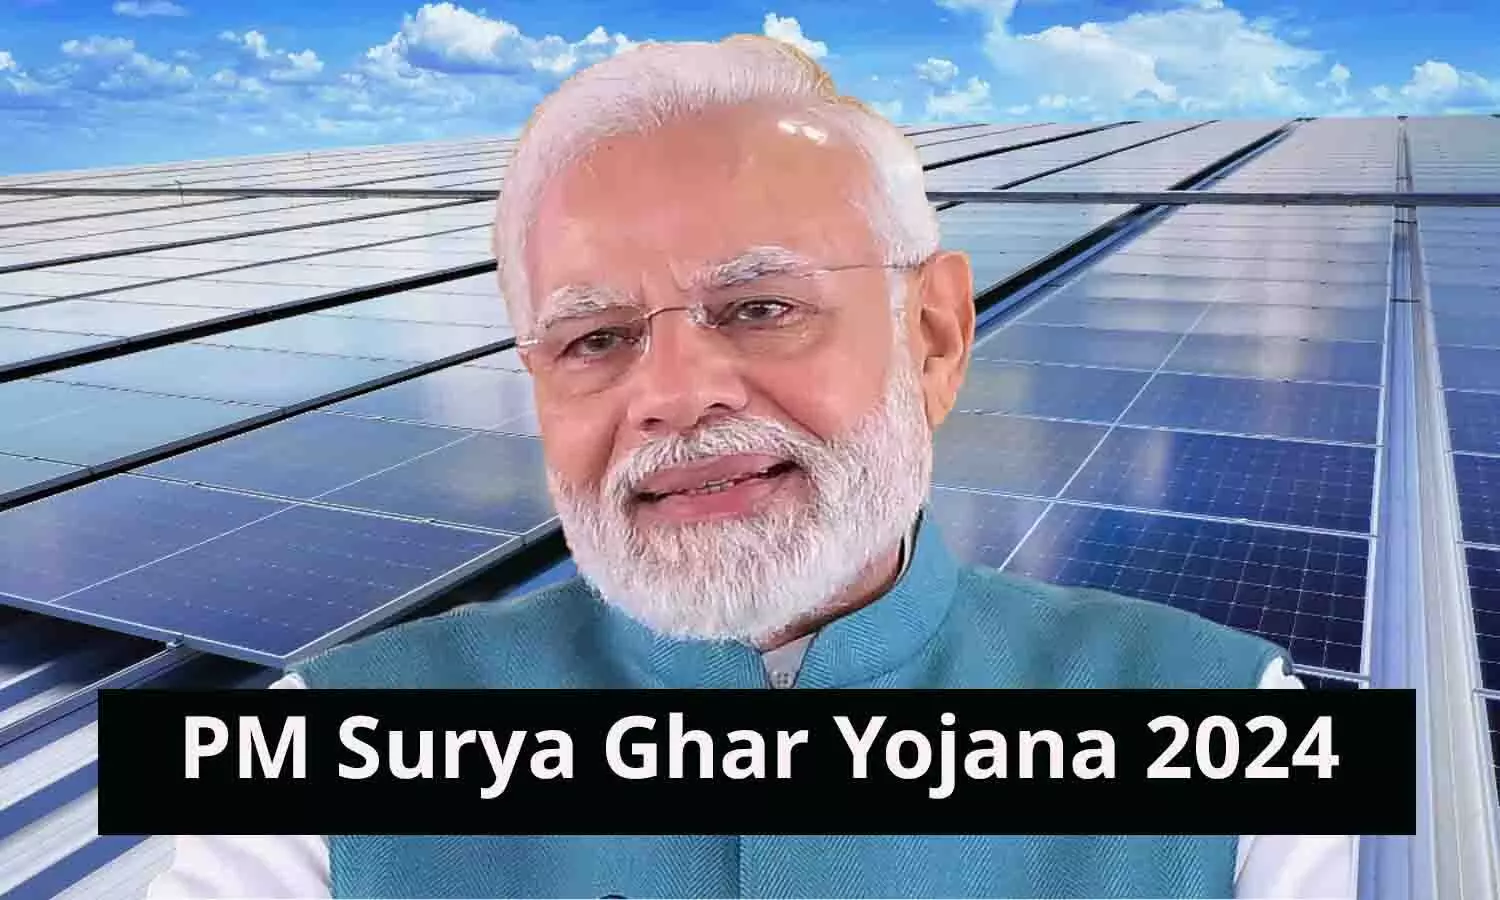 PM Surya Ghar Yojana: केंद्र सरकार का बड़ा ऐलान! सभी का 300 यूनिट तक मिलेगी फ्री बिजली